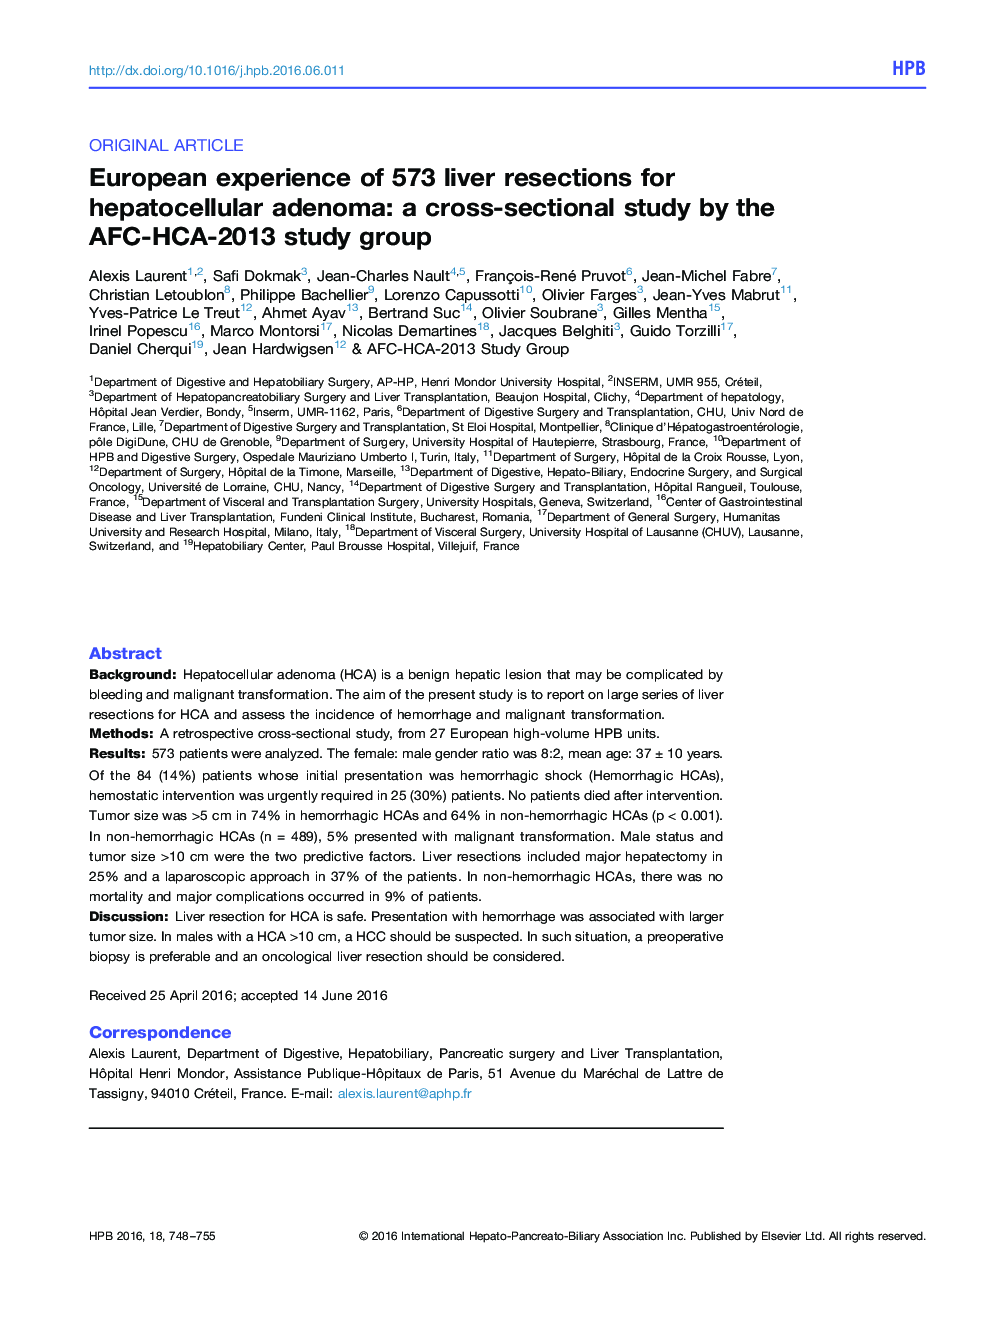 تجربه اروپایی از 573 جراحی کبد برای آدنوم هپاتوسلولار: یک مطالعه مقطعی توسط گروه تحقیقاتی AFC-HCA-2013